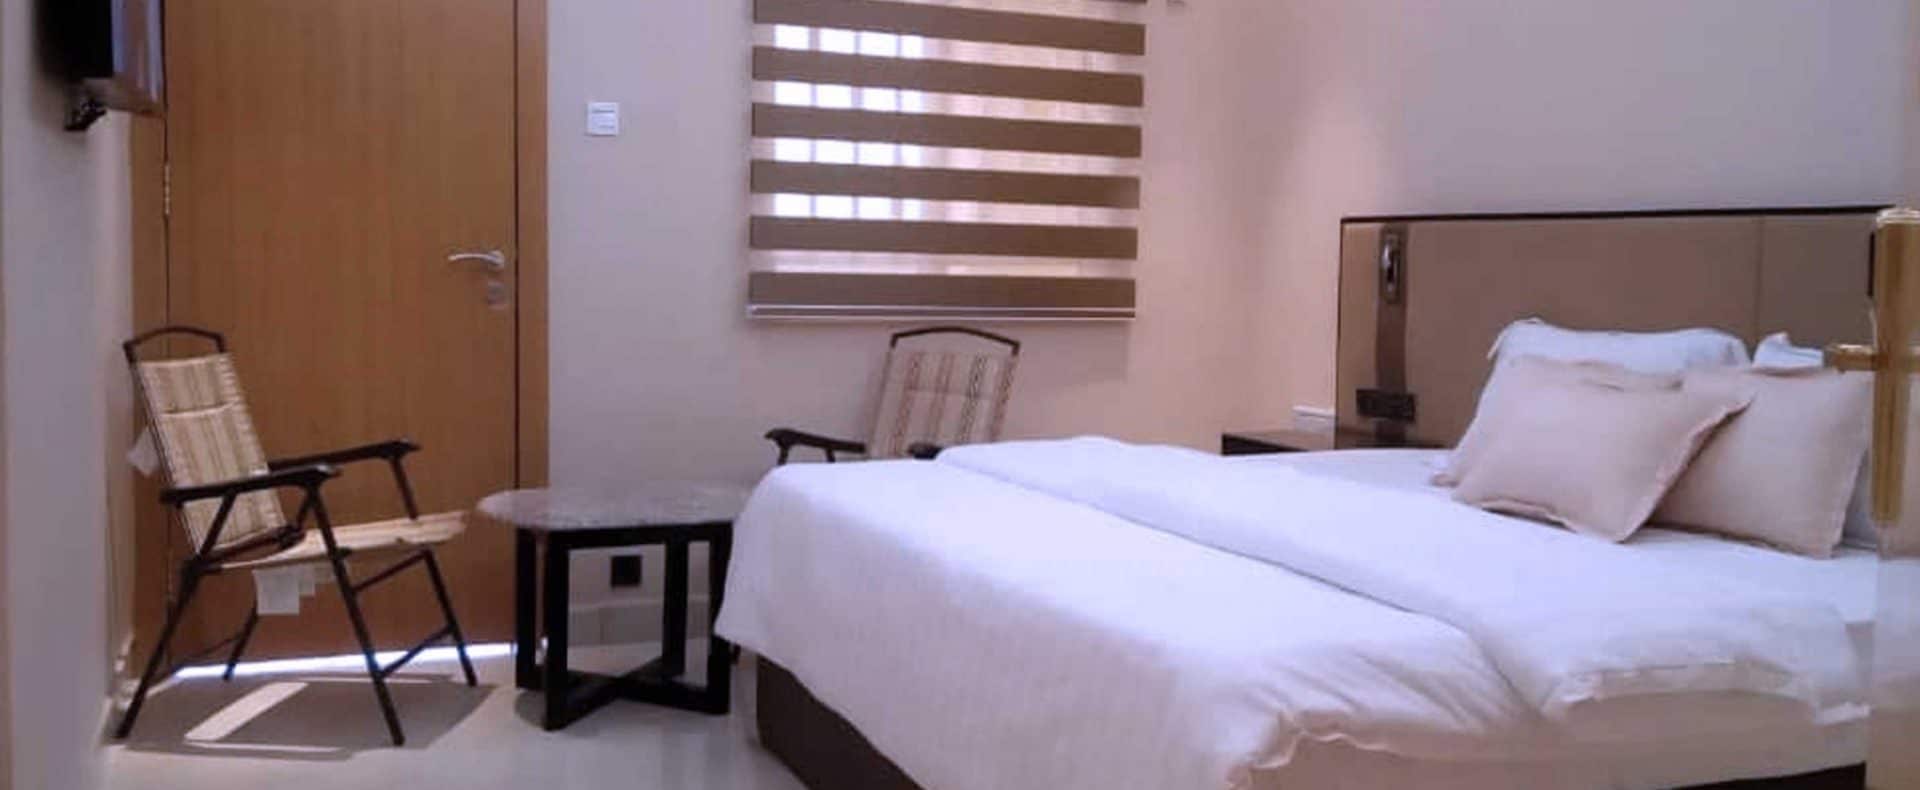 Hotel Exchequer Room In Owerri Imo Nigeria